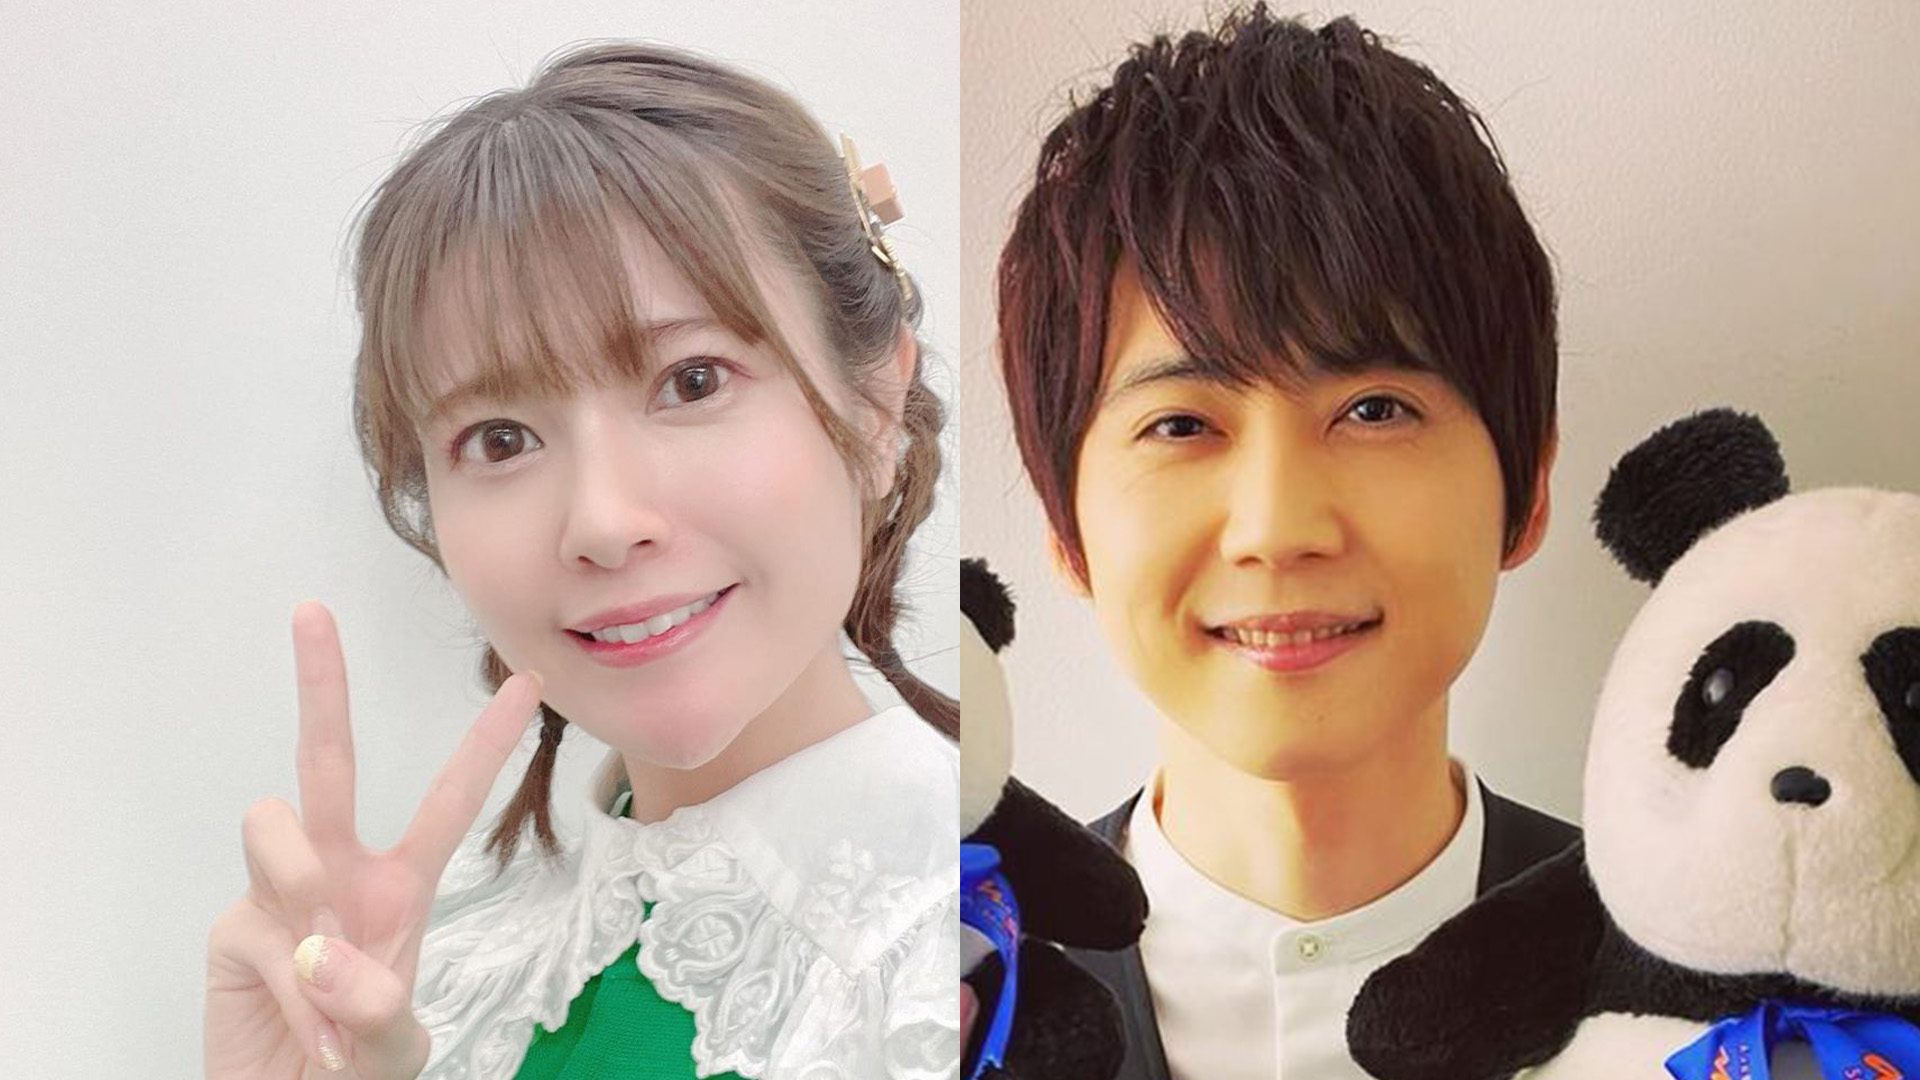 Anime voice actors Ayana Taketatsu, Yuki Kaji to welcome first child together